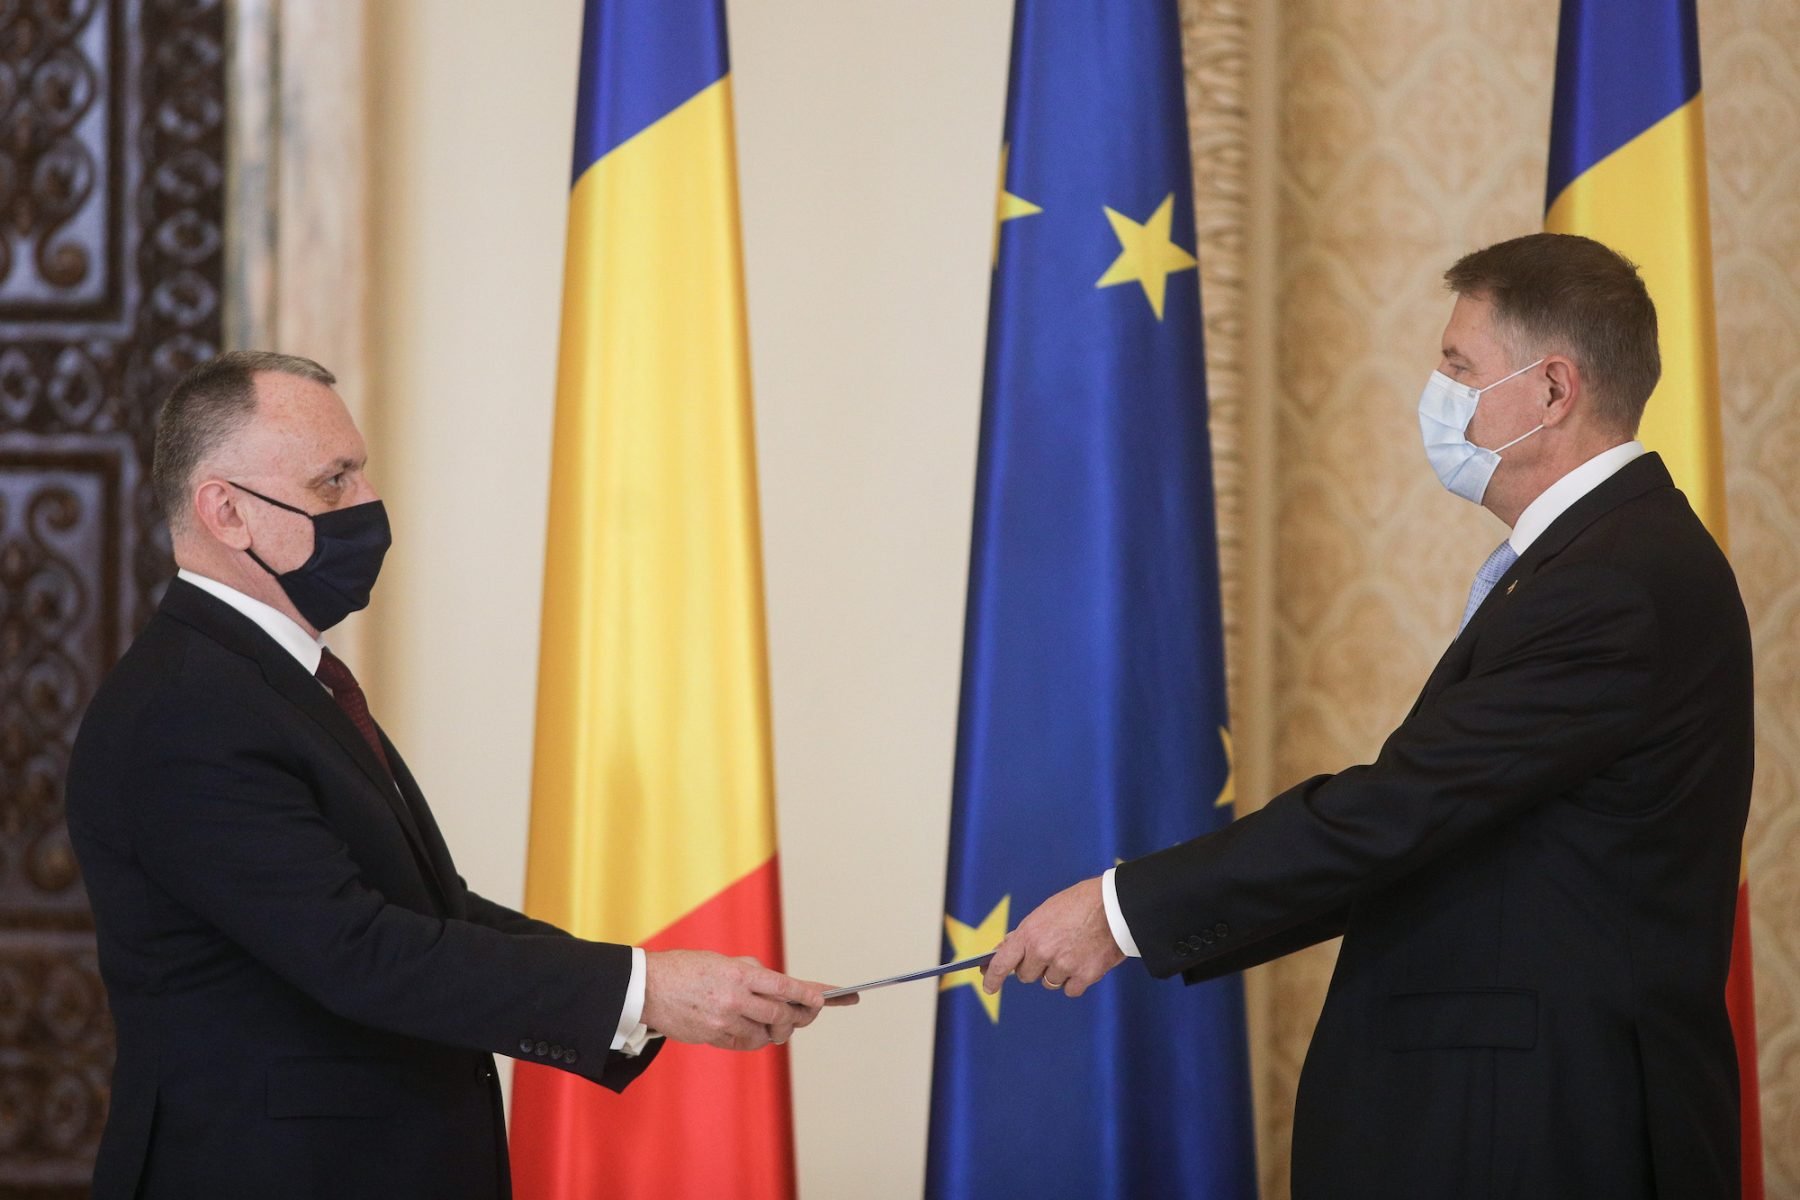  Klaus Iohannis l-a convocat la o şedinţă de urgenţă pe ministrul Educaţiei, Sorin Cîmpeanu